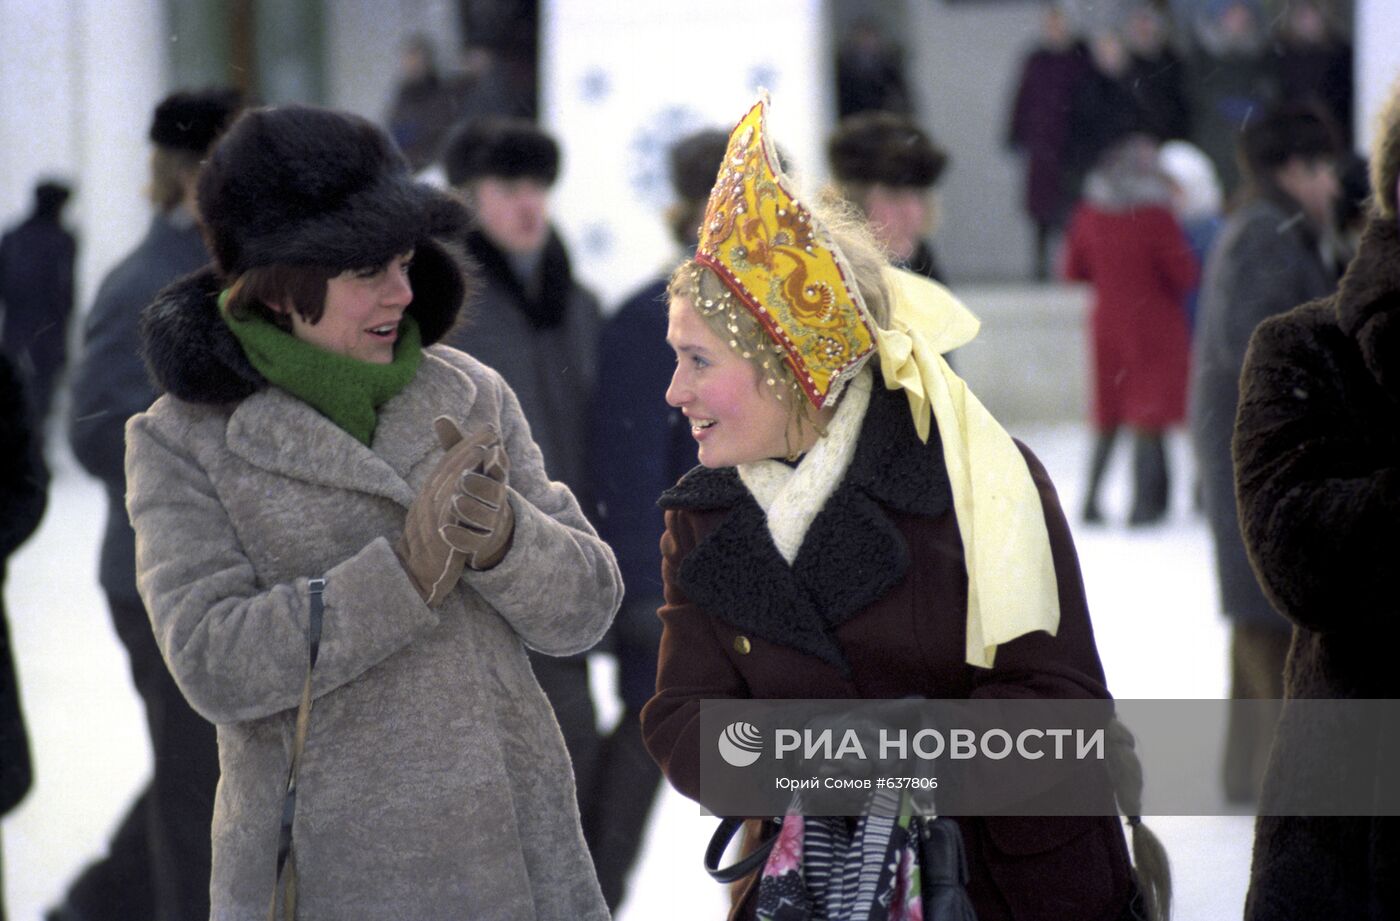 Посетители на празднике "Русская зима"